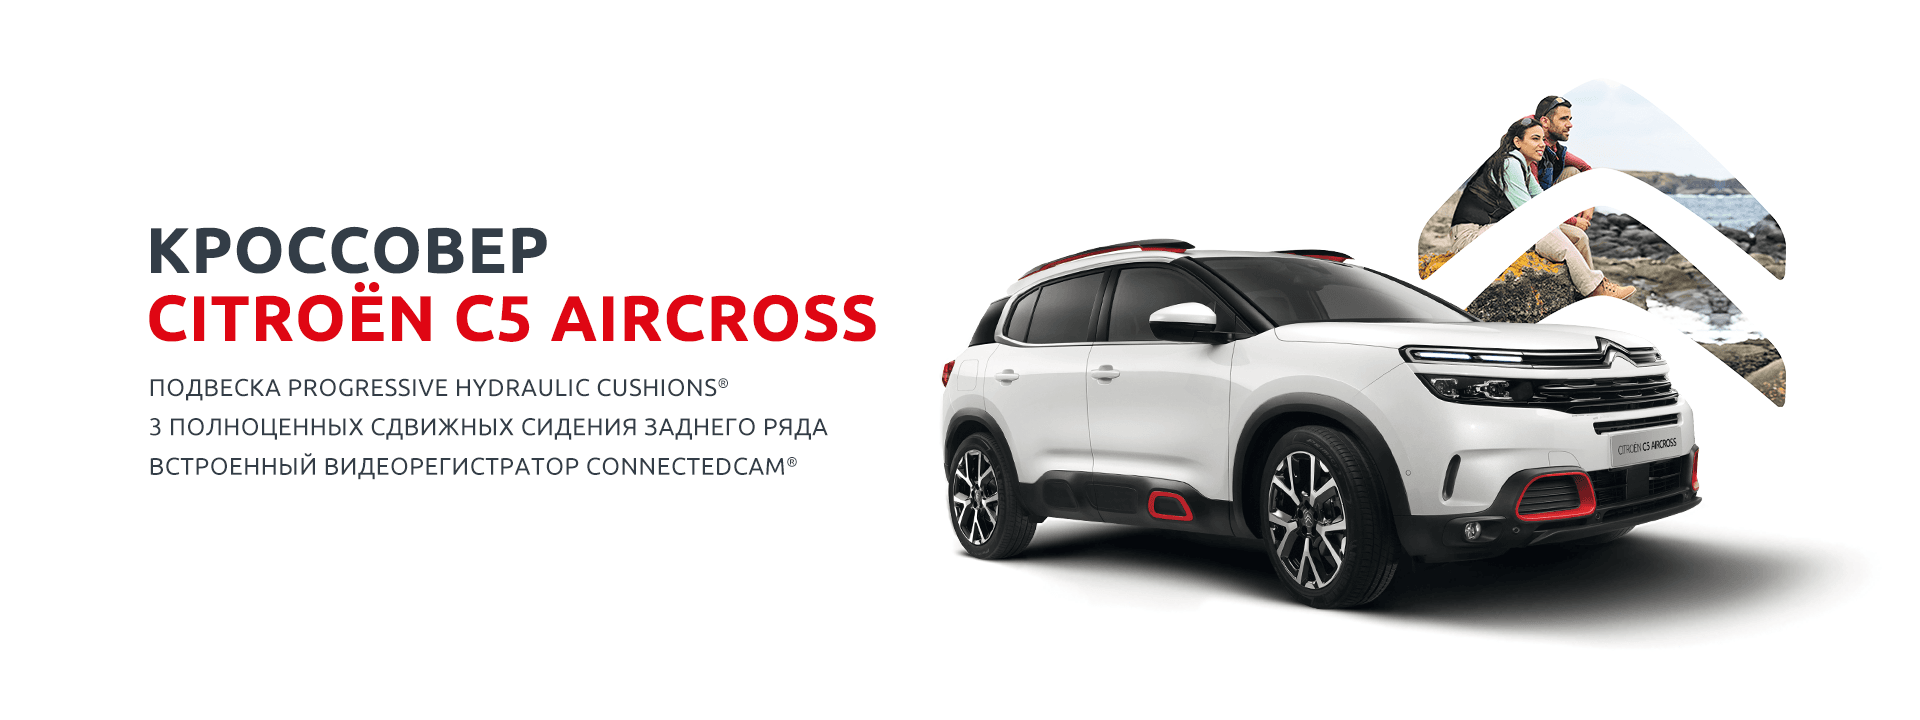 Новый автомобиль Citroën C5 AIRCROSS